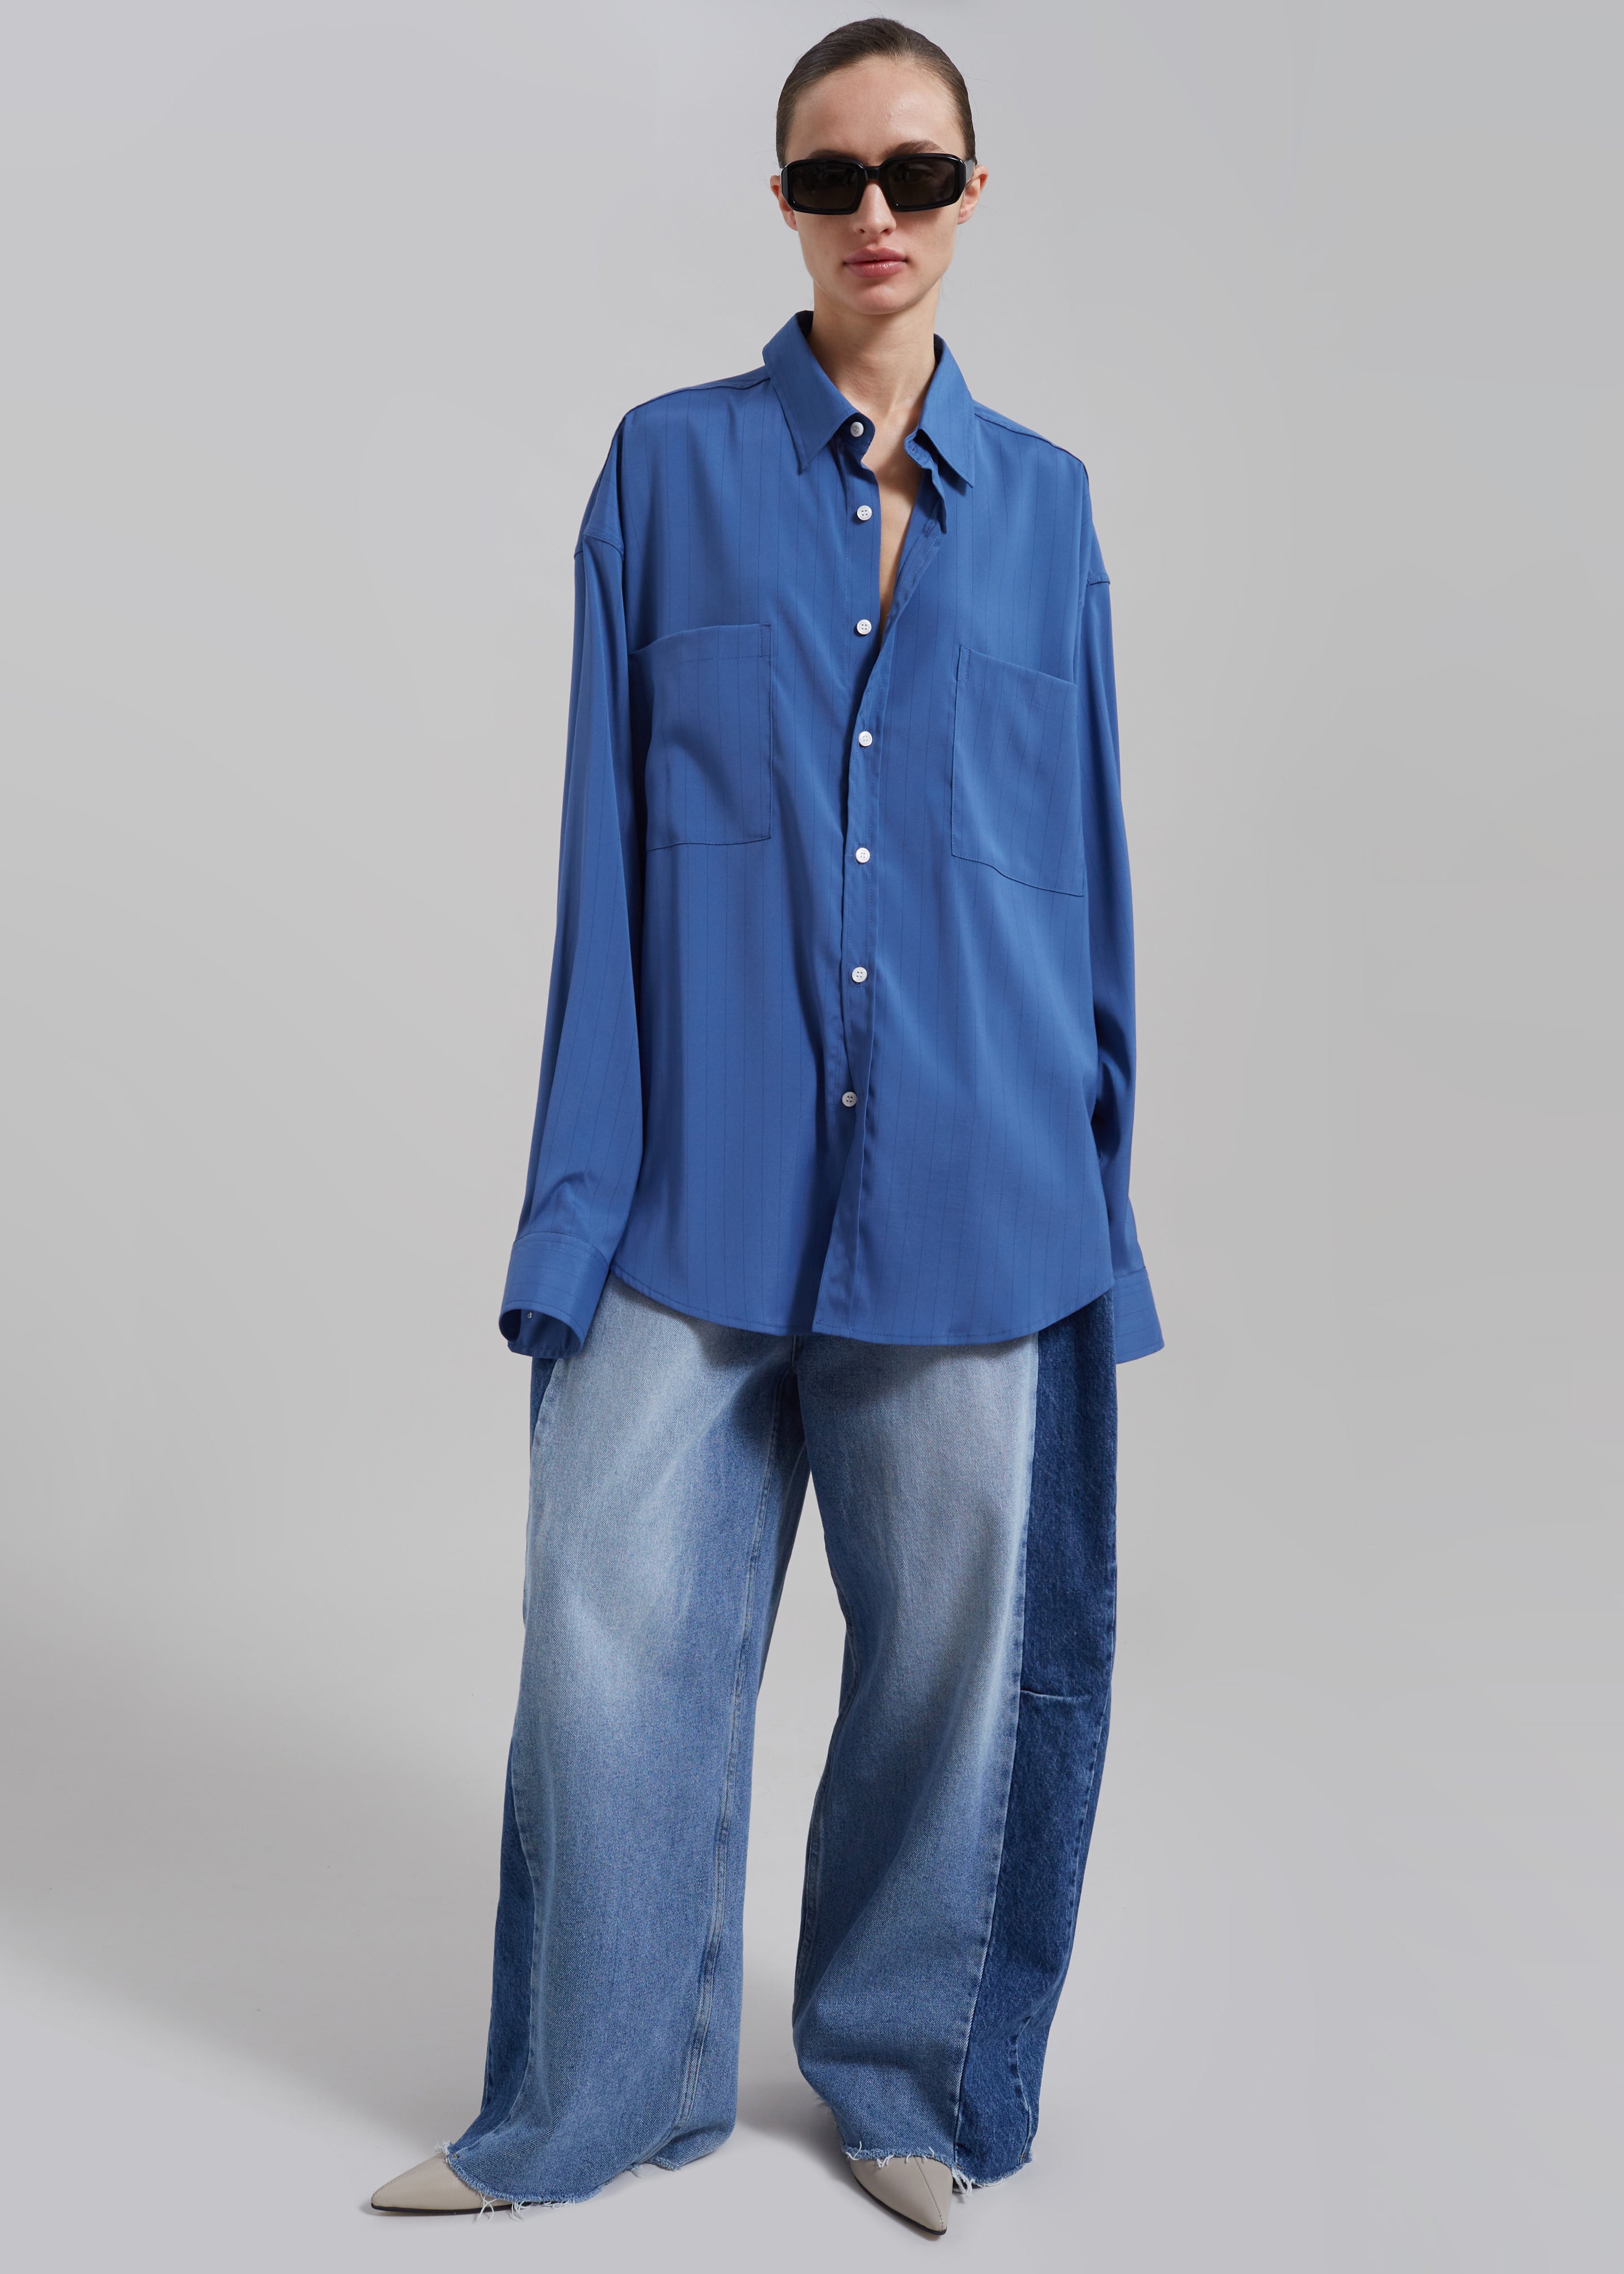 Elowen Button Up Shirt - Blue Stripe - 4